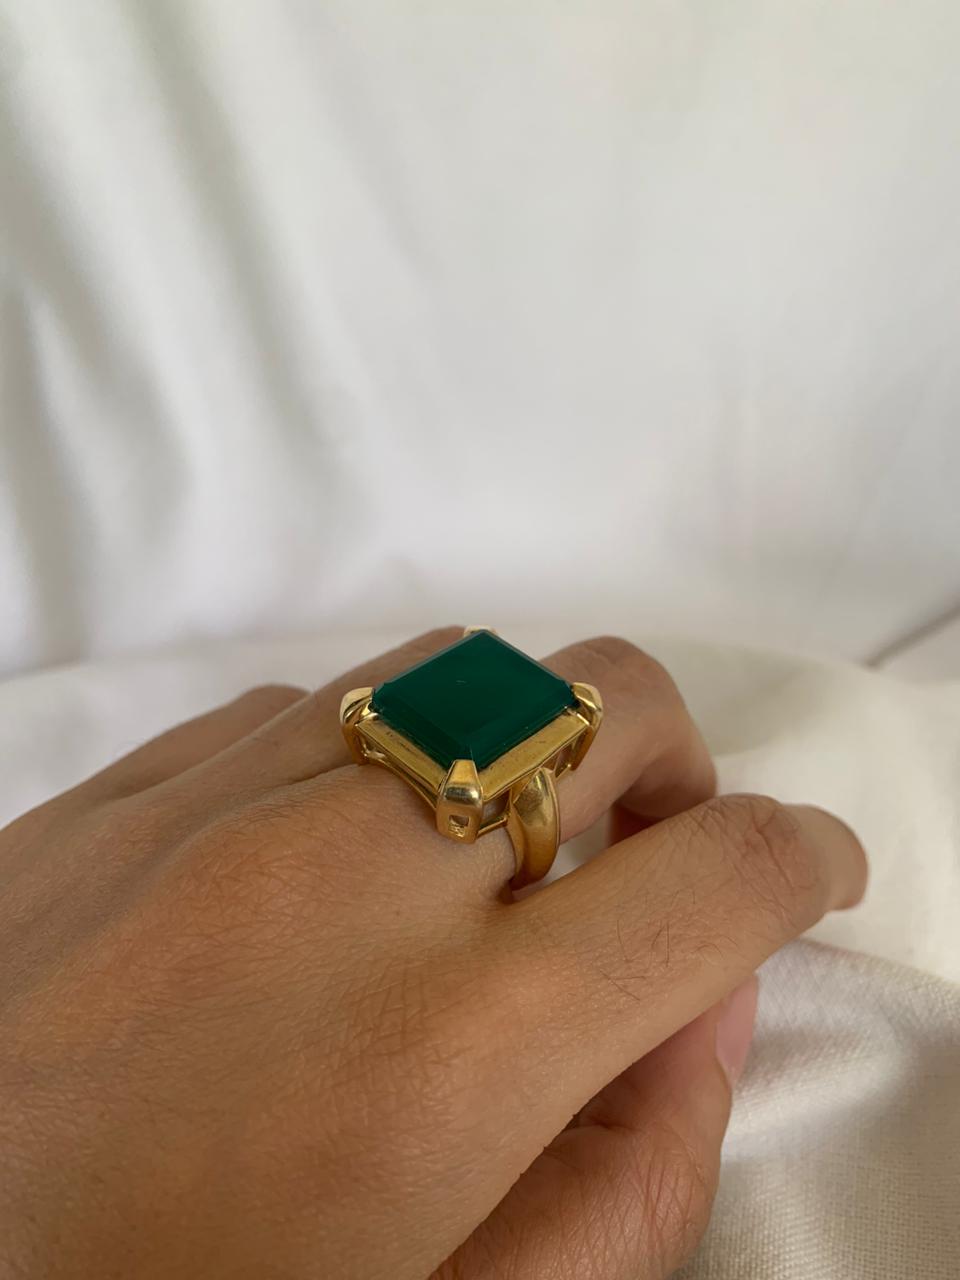 Green Emerald Ring Gold 10 karat Men's Diamond Jewelry – J F M